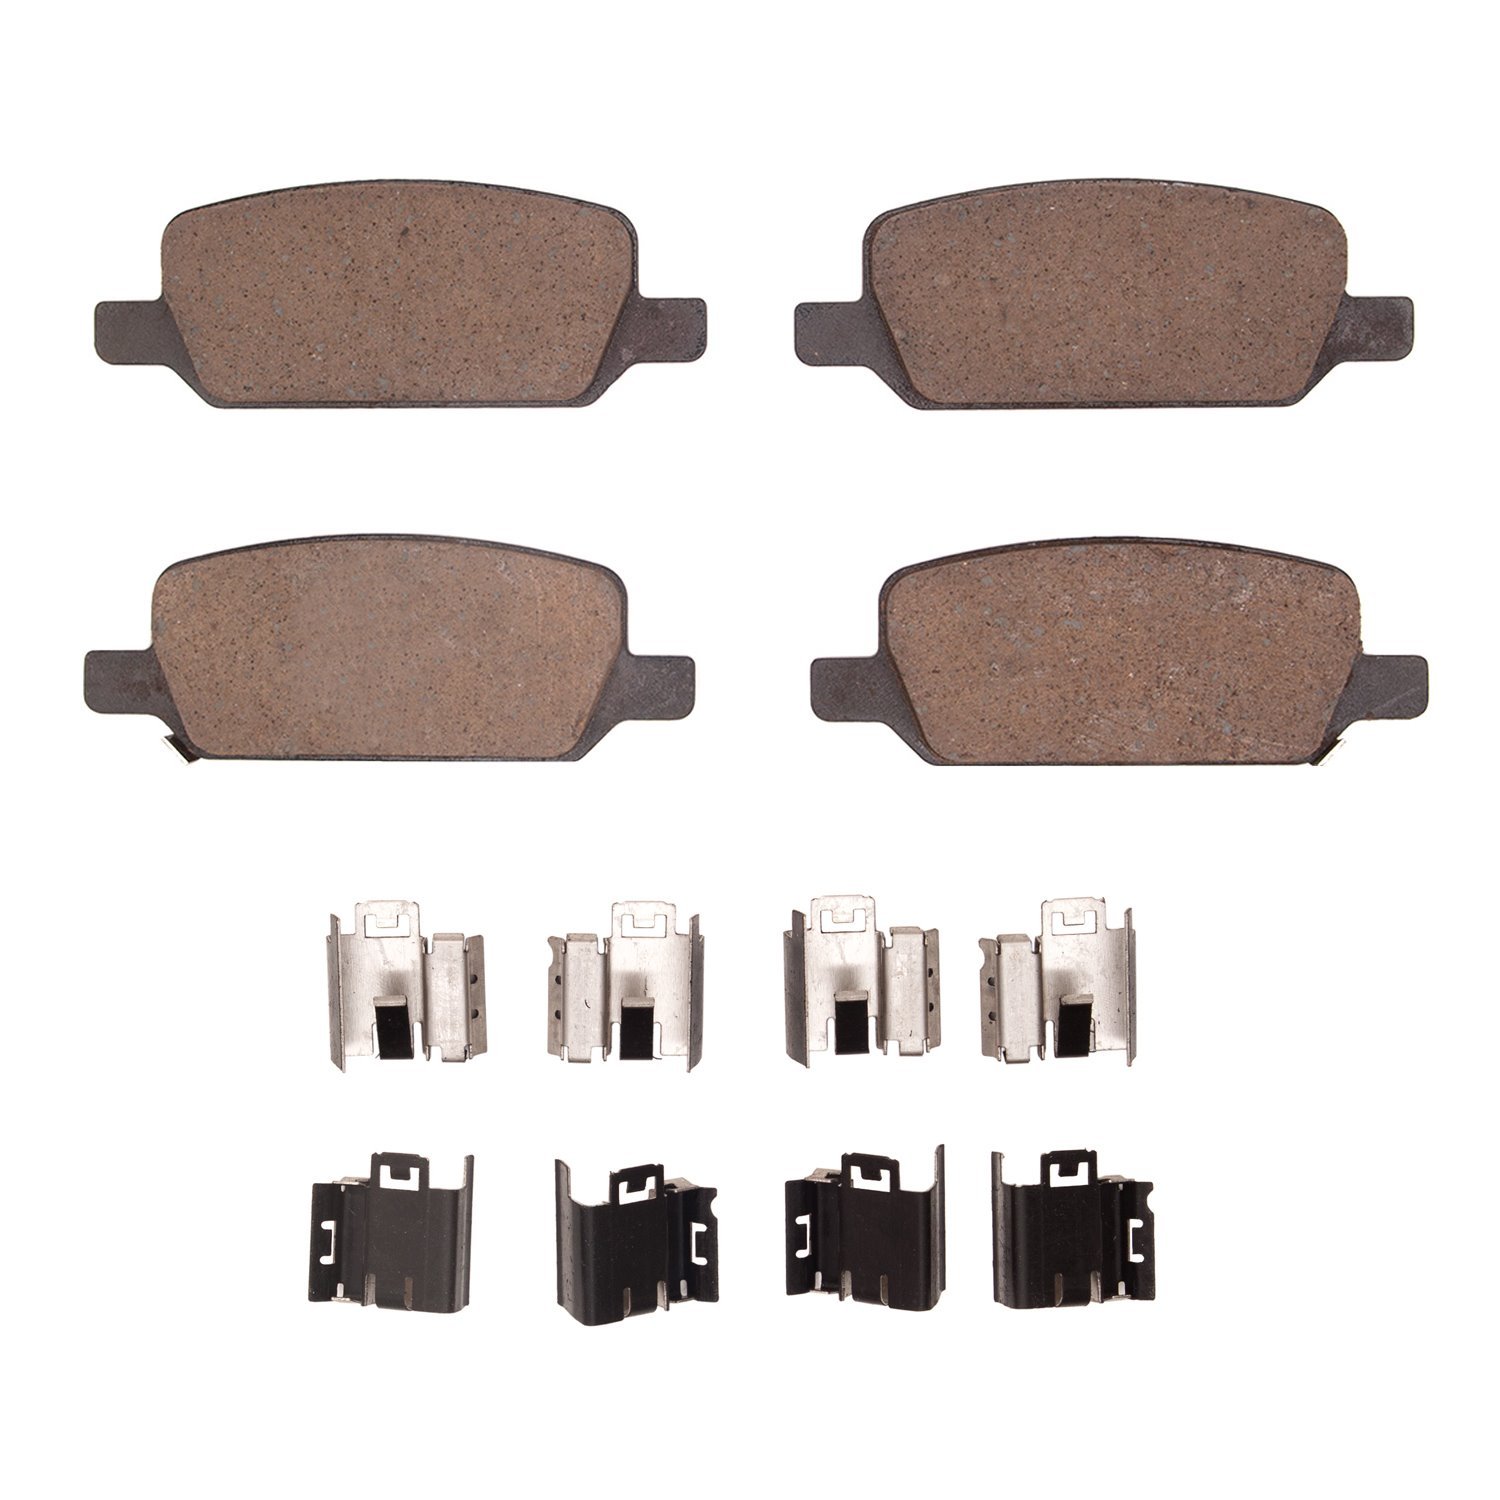 1310-2283-01 3000-Series Ceramic Brake Pads & Hardware Kit, Fits Select Tesla, Position: Rear